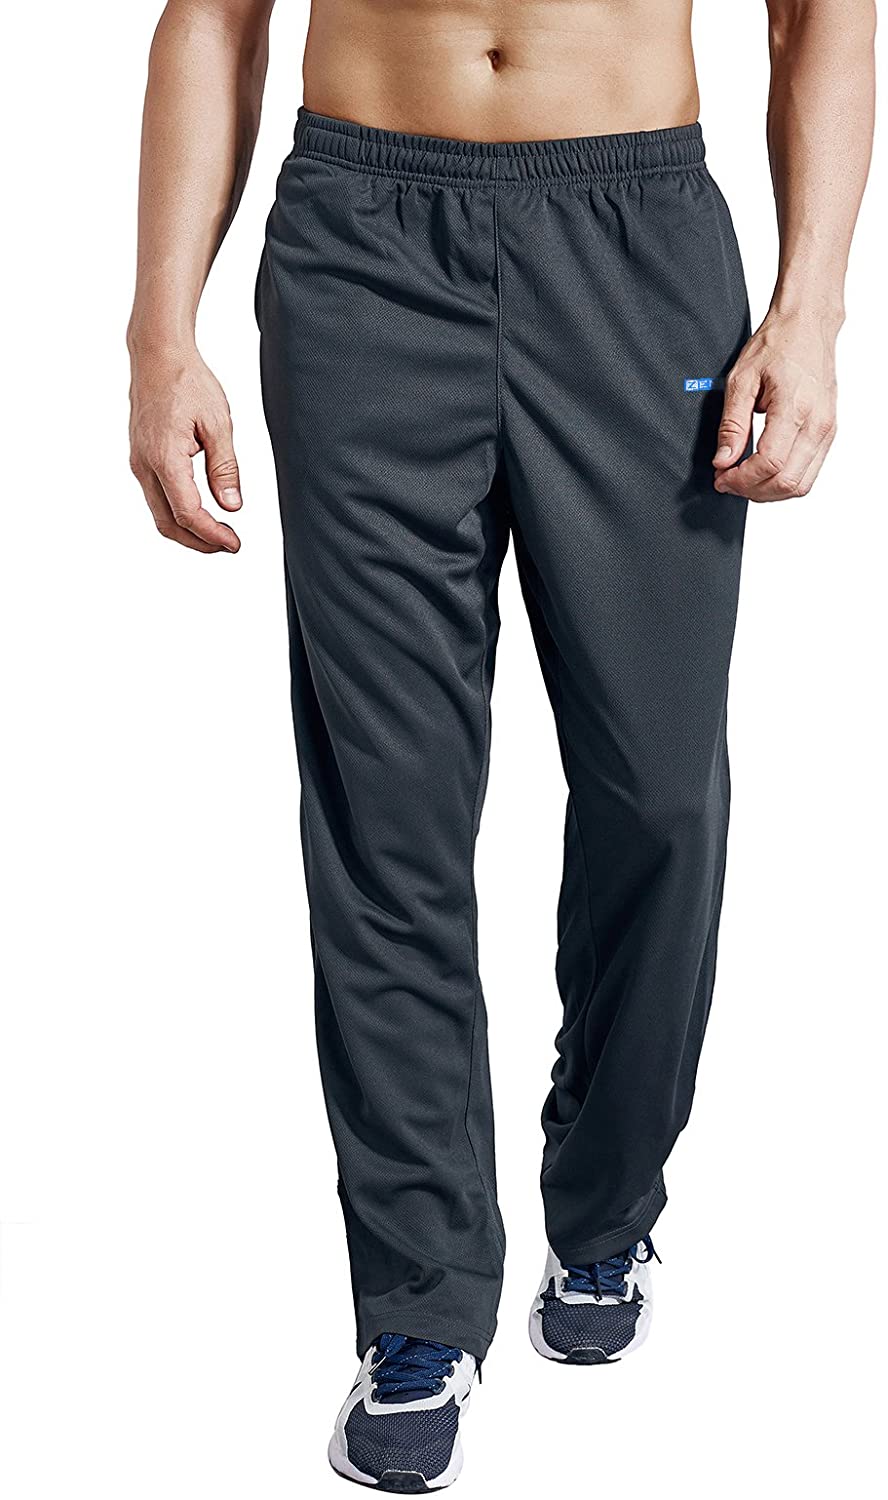 ZENGVEE Men's Sweatpants with Zipper Pockets Open Bottom Athletic Pants ...